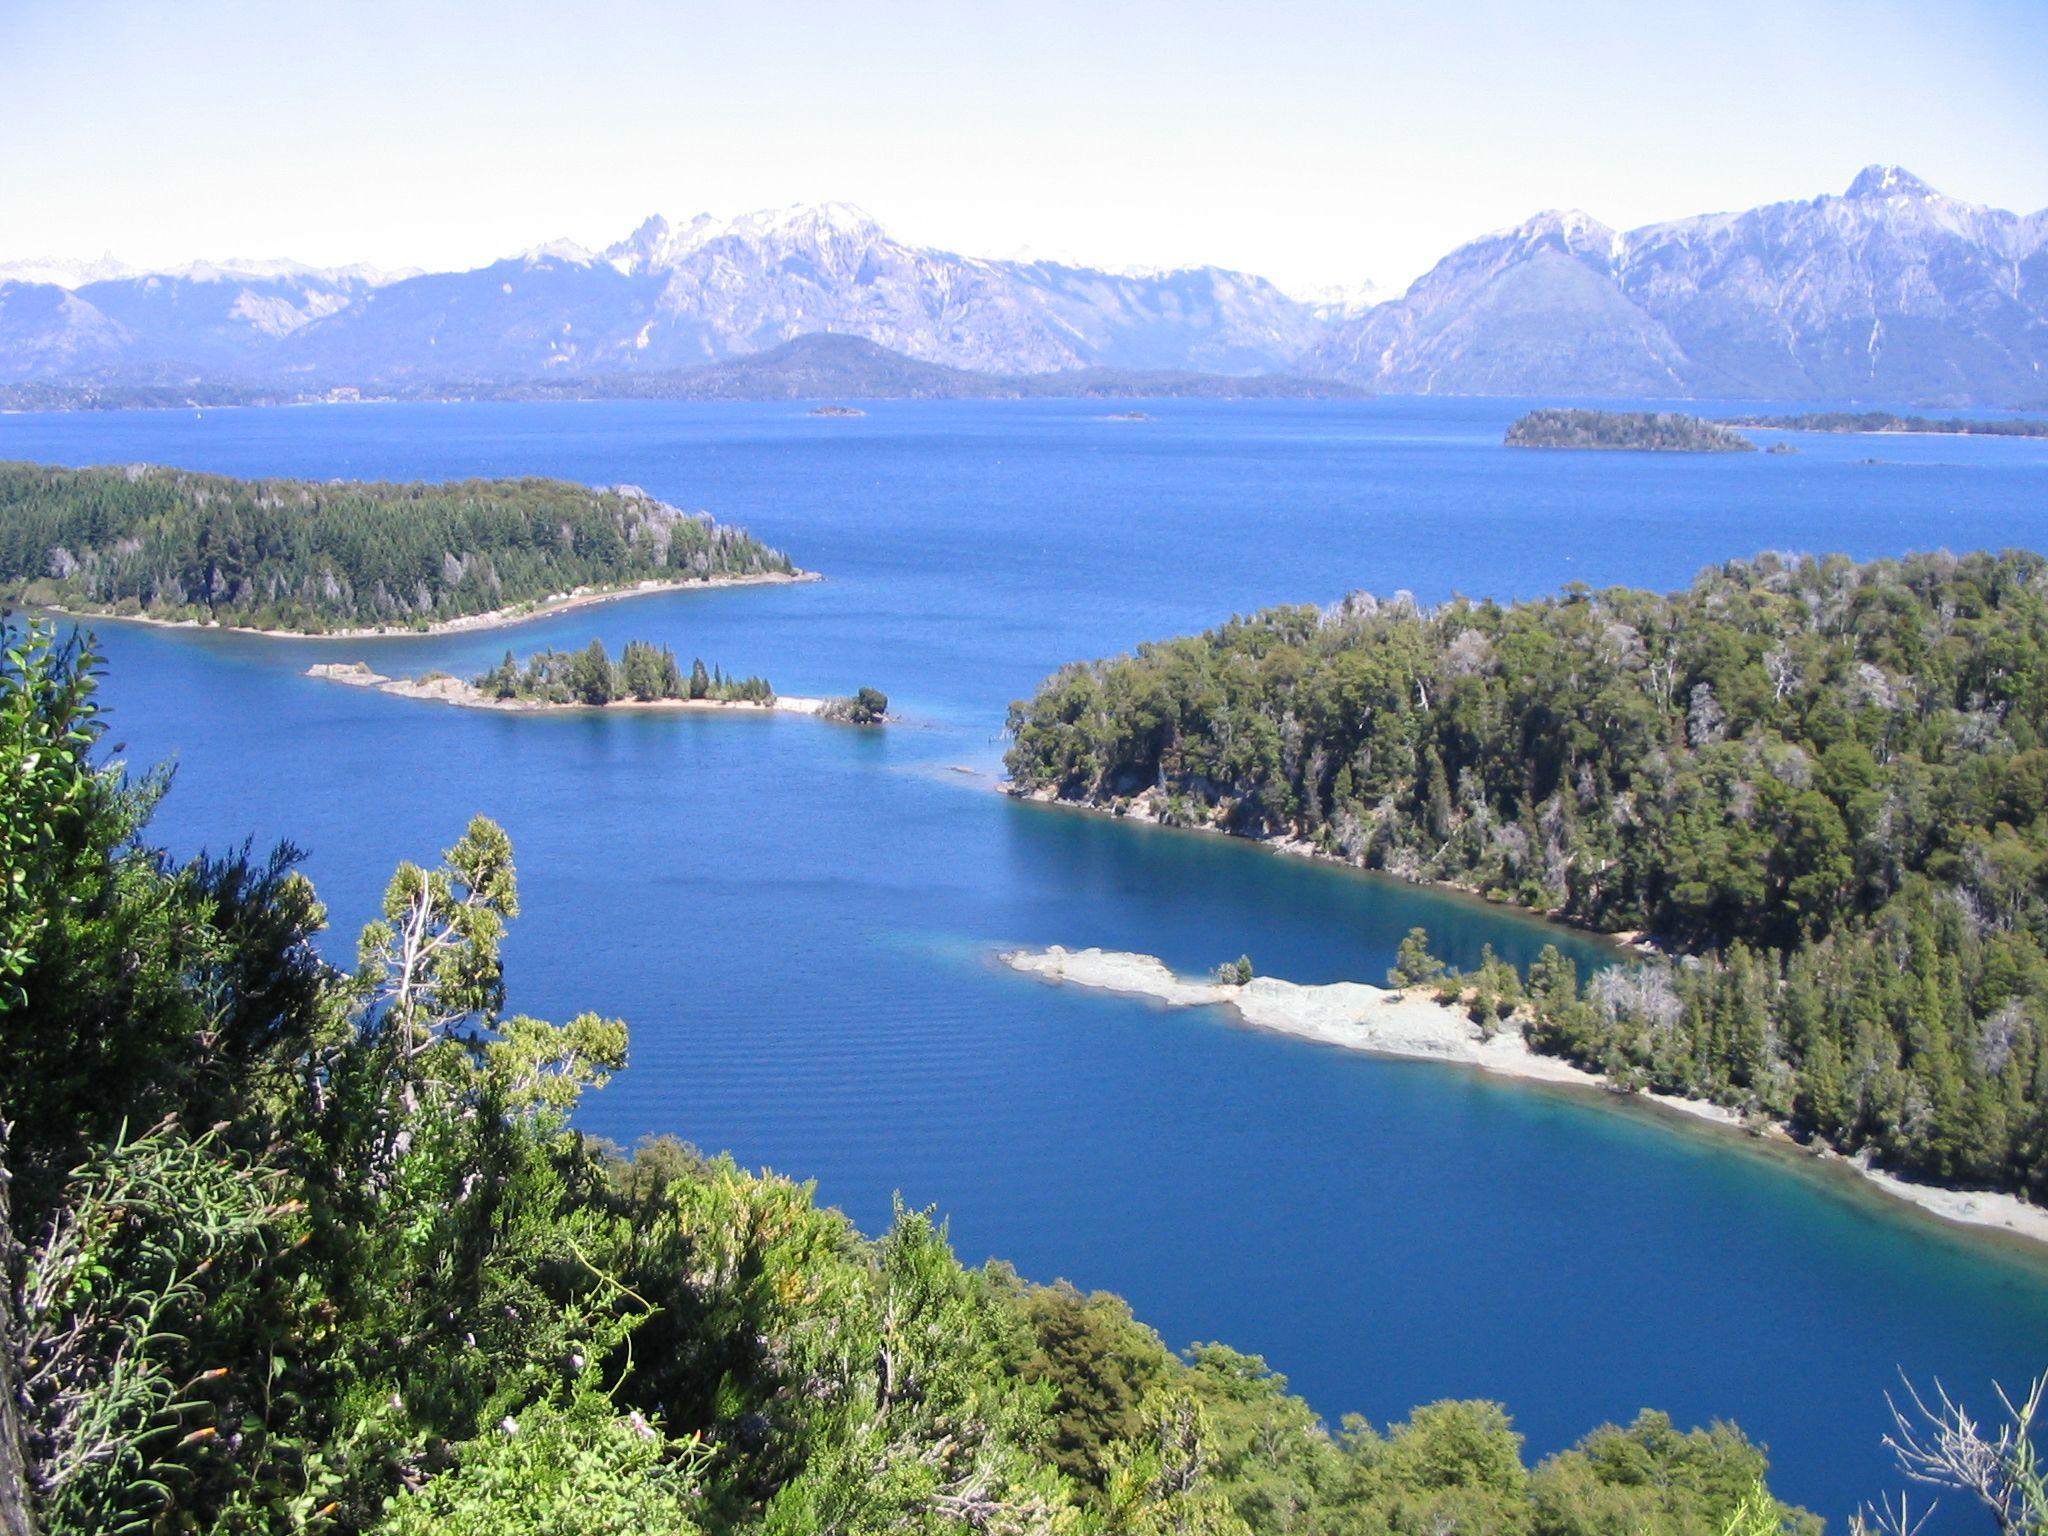 San Carlos de Bariloche. Rio Negro. Argentina. Argentina